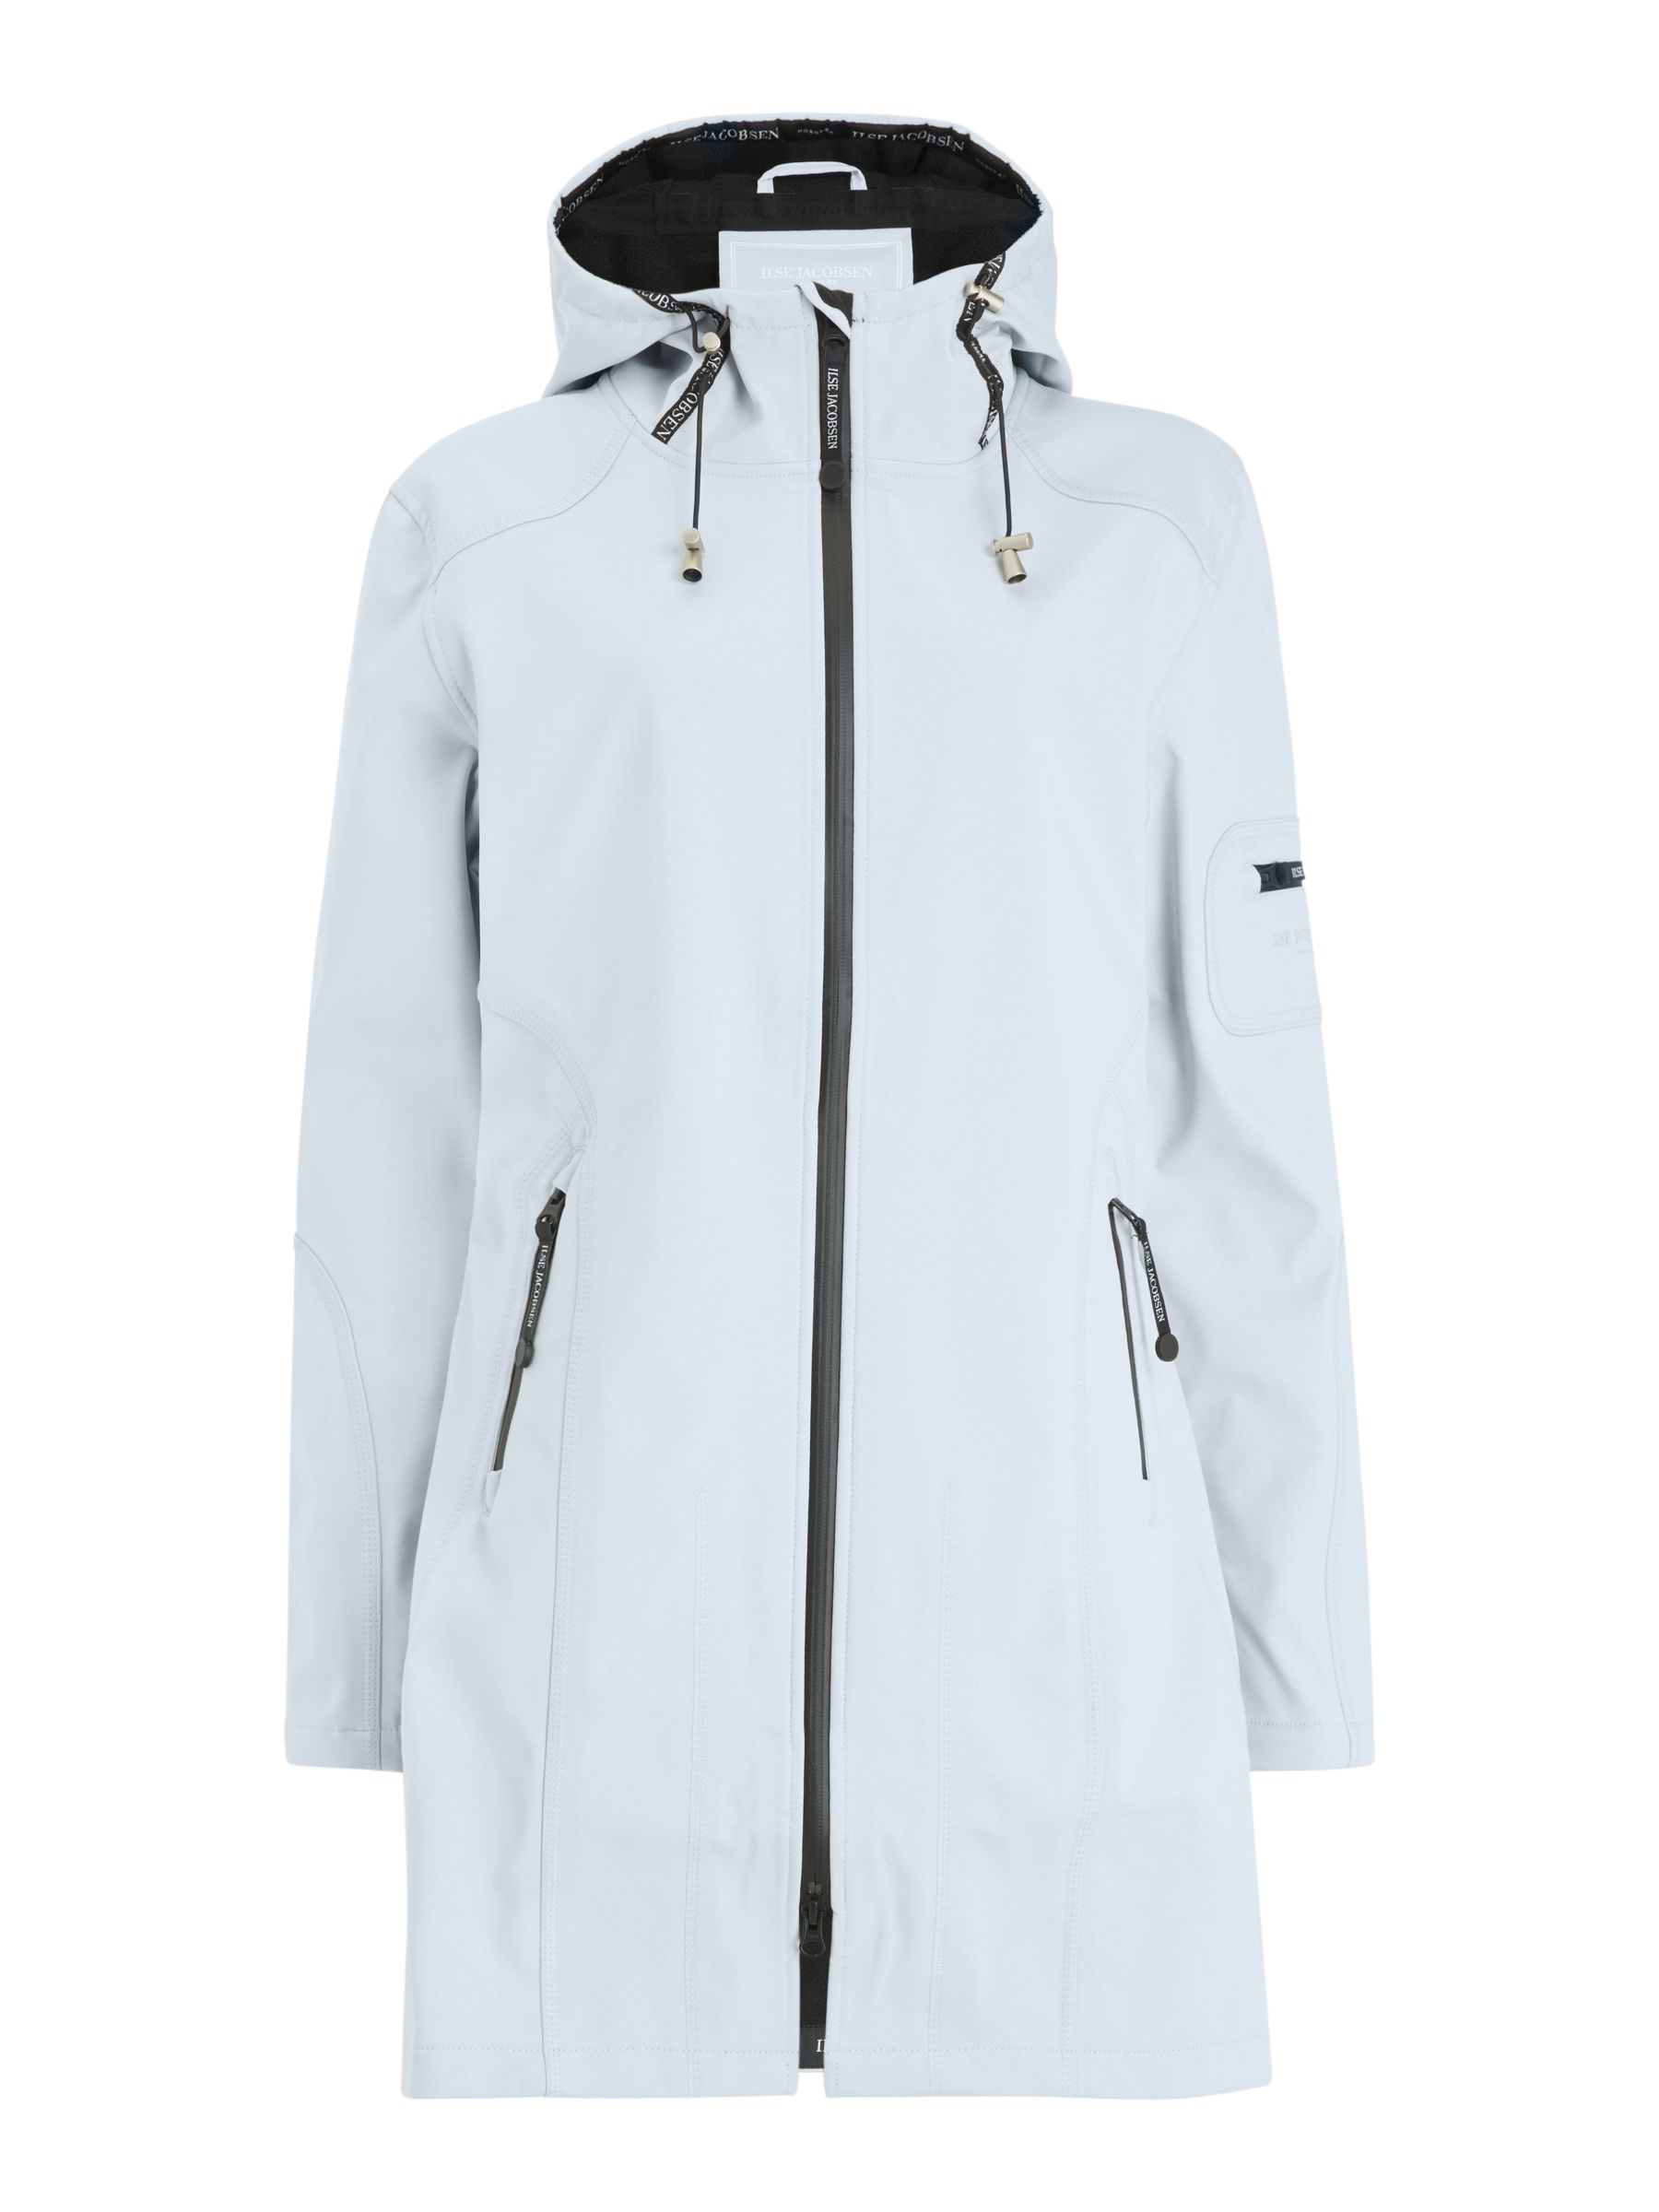 Ilse Jacobsen Hornbæk 3/4 Length Raincoat, White Blue at John Lewis ...